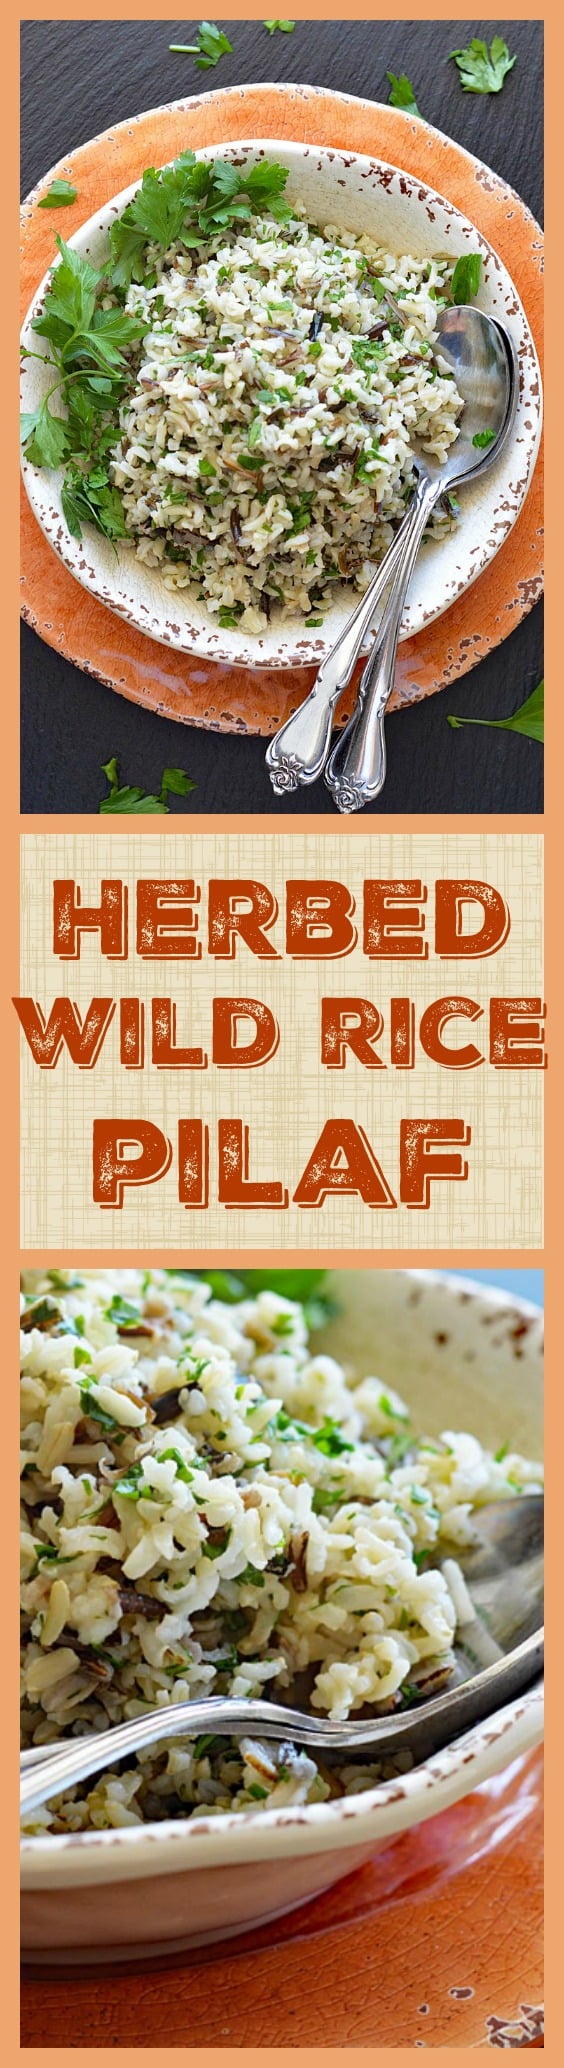 Herbed Wild Rice Pilaf